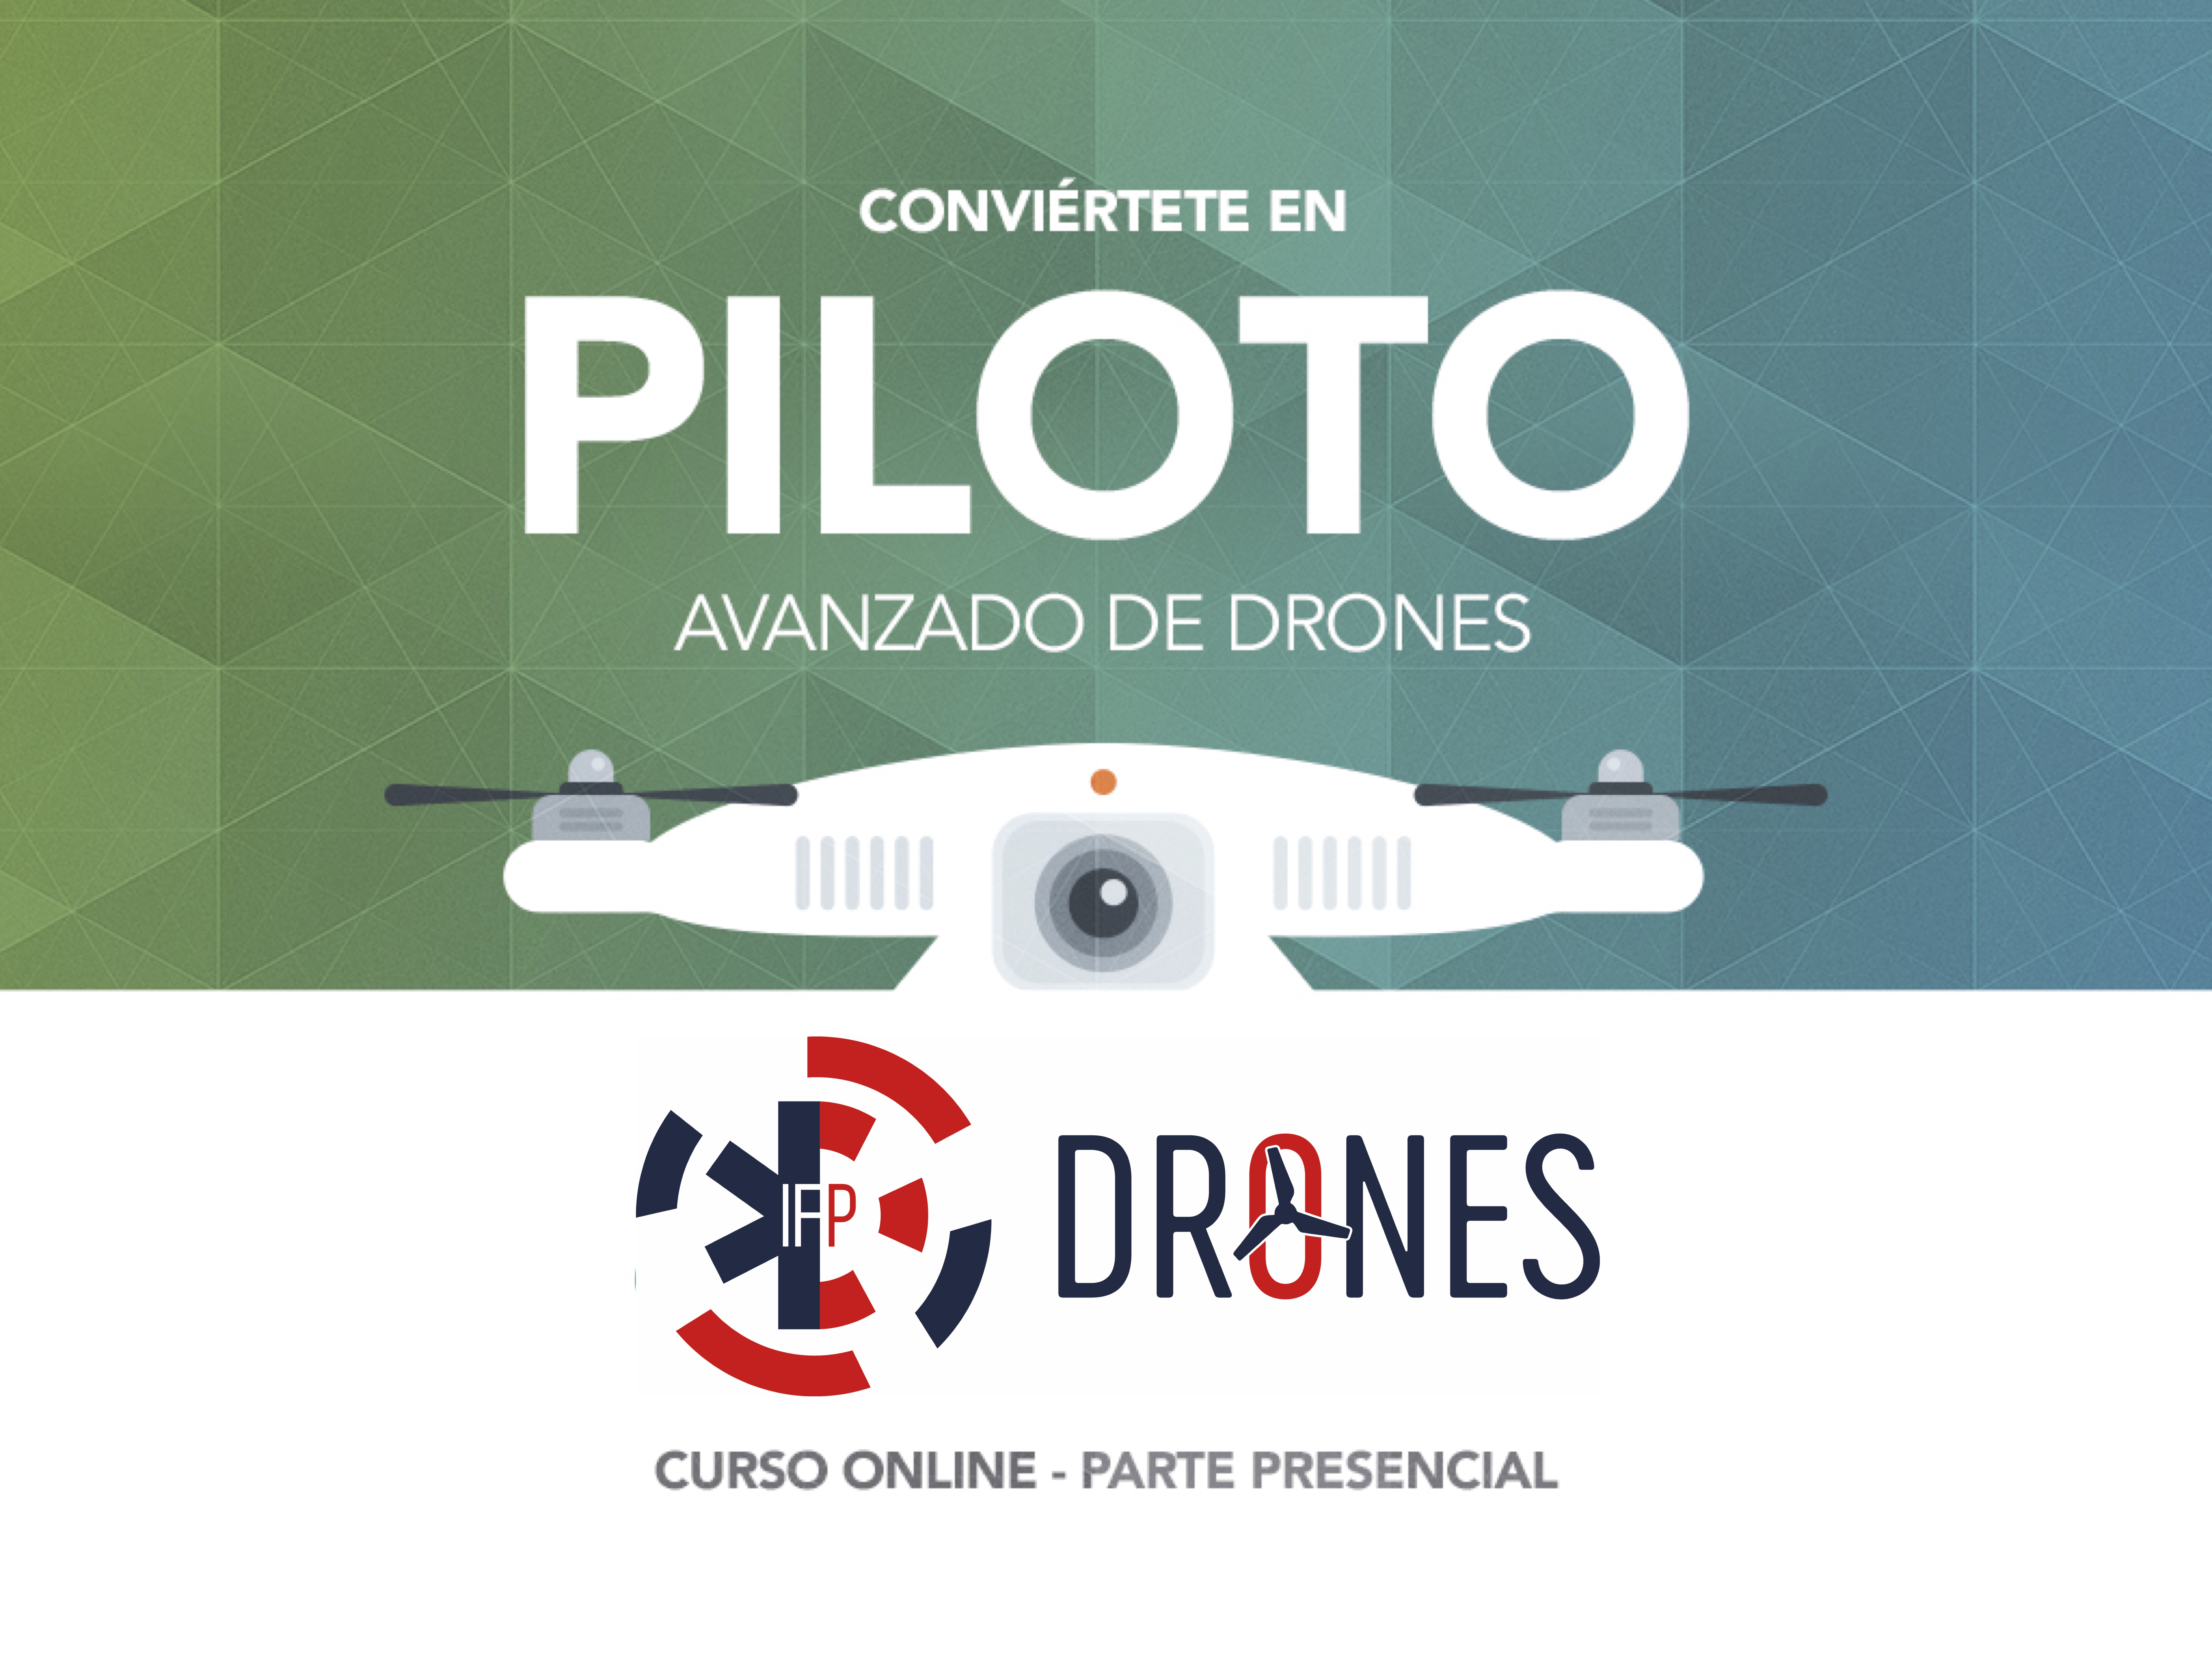 Course Image PILOTO AVANZADO DE DRONES